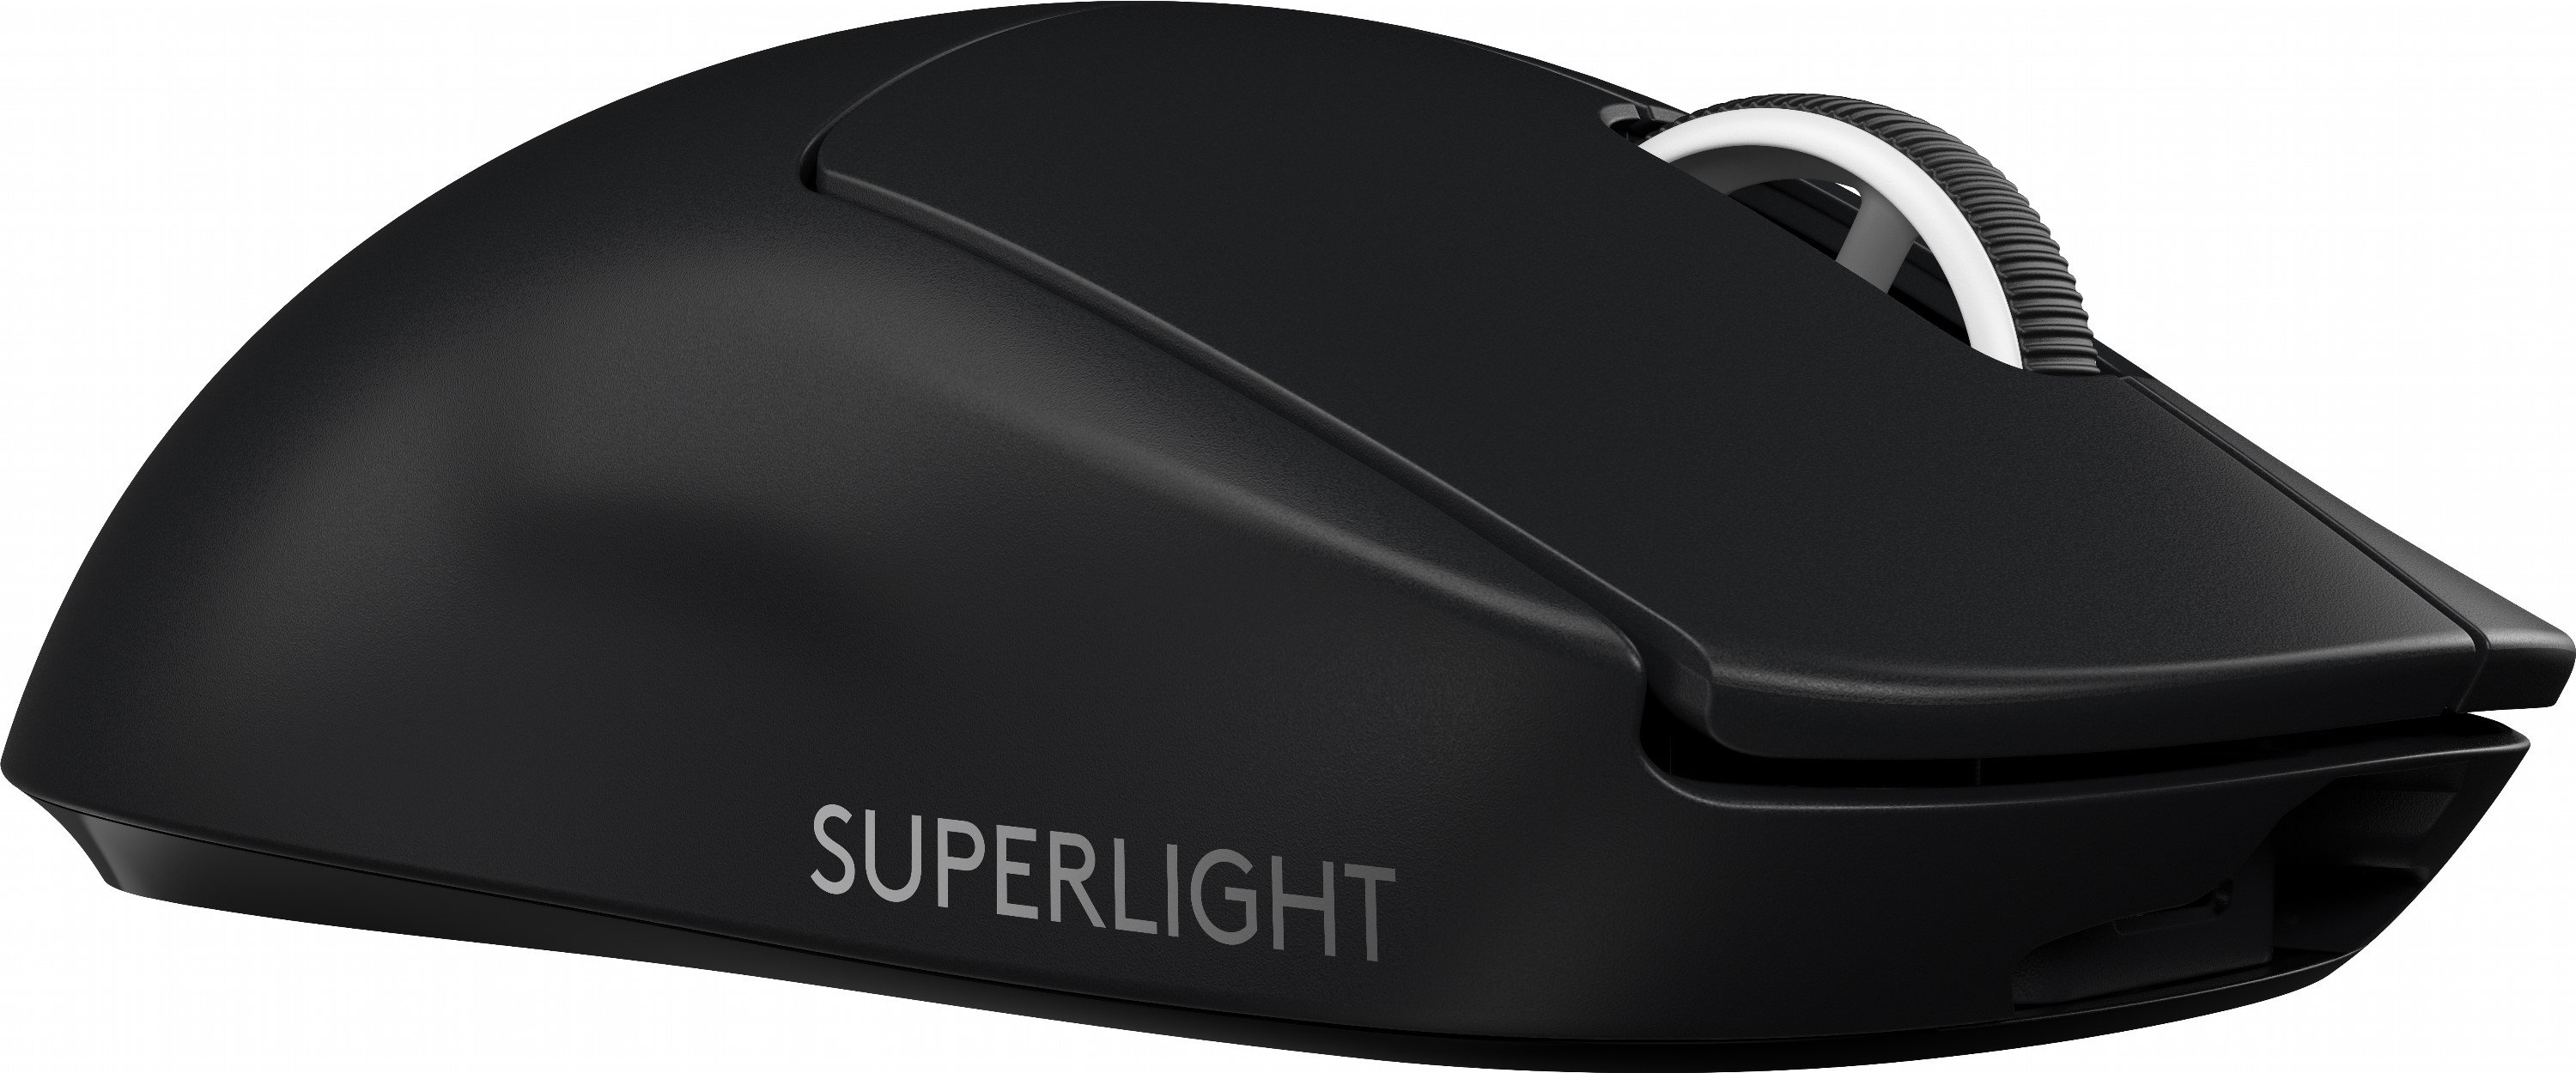 Беспроводная игровая мышь pro x superlight. Logitech g Pro x Superlight. Logitech g Pro Wireless Superlight. Мышь Logitech 910-005880. Мышь Logitech g Pro x Superlight.